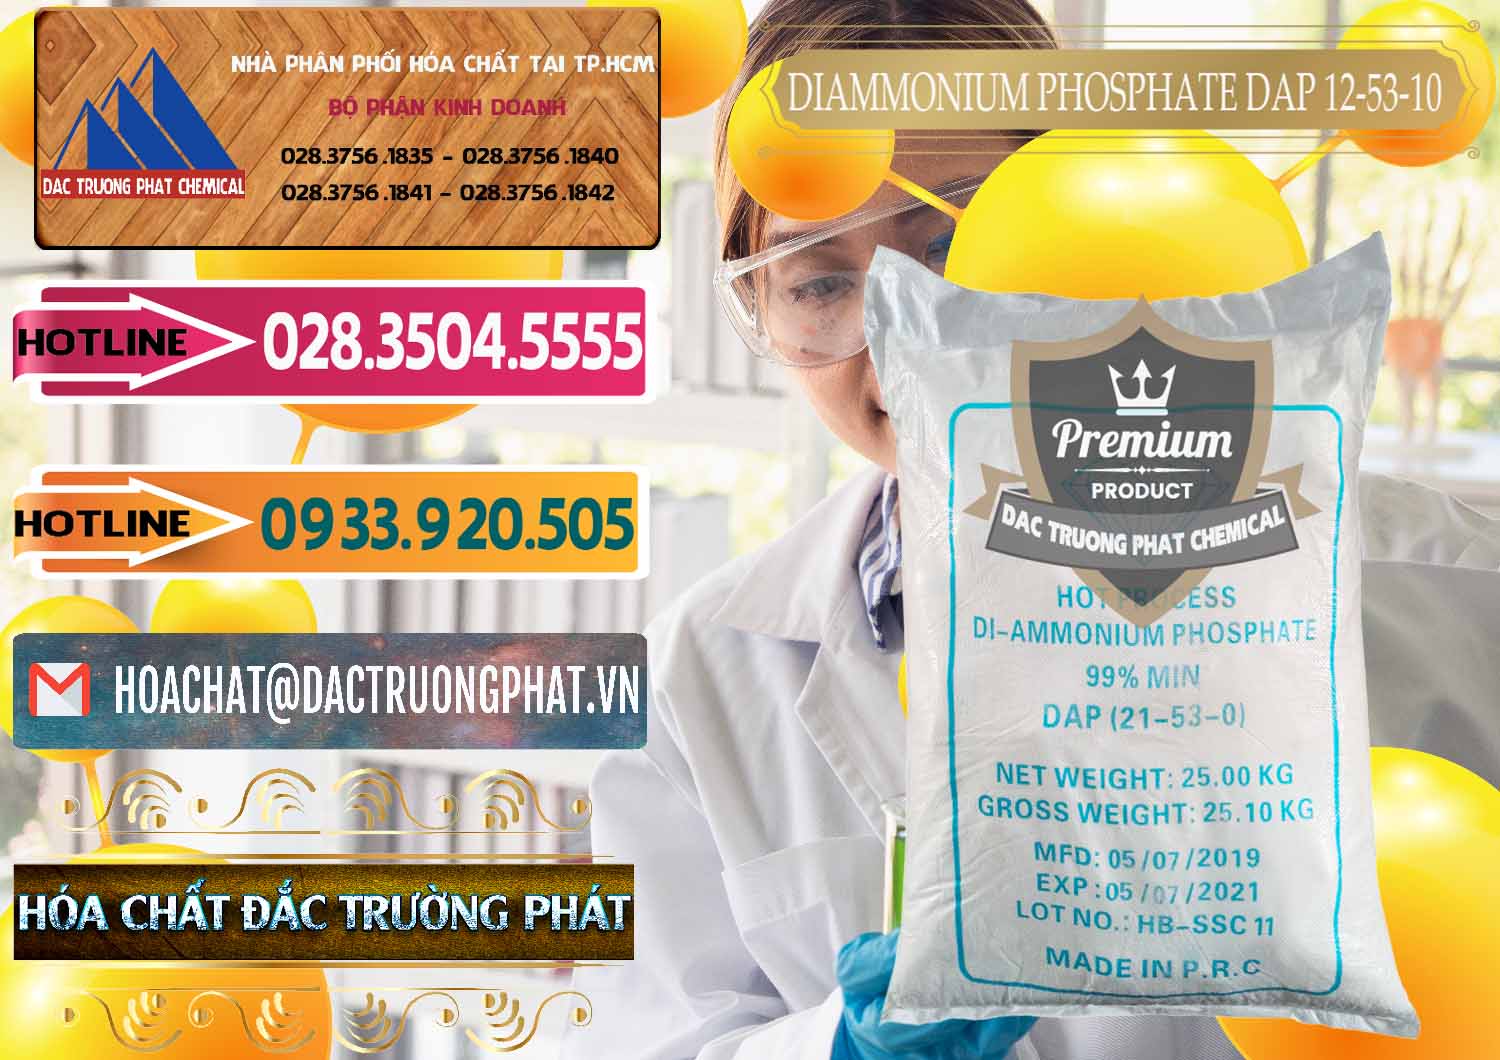 Công ty bán và phân phối DAP - Diammonium Phosphate Trung Quốc China - 0319 - Cung cấp và bán hóa chất tại TP.HCM - dactruongphat.vn